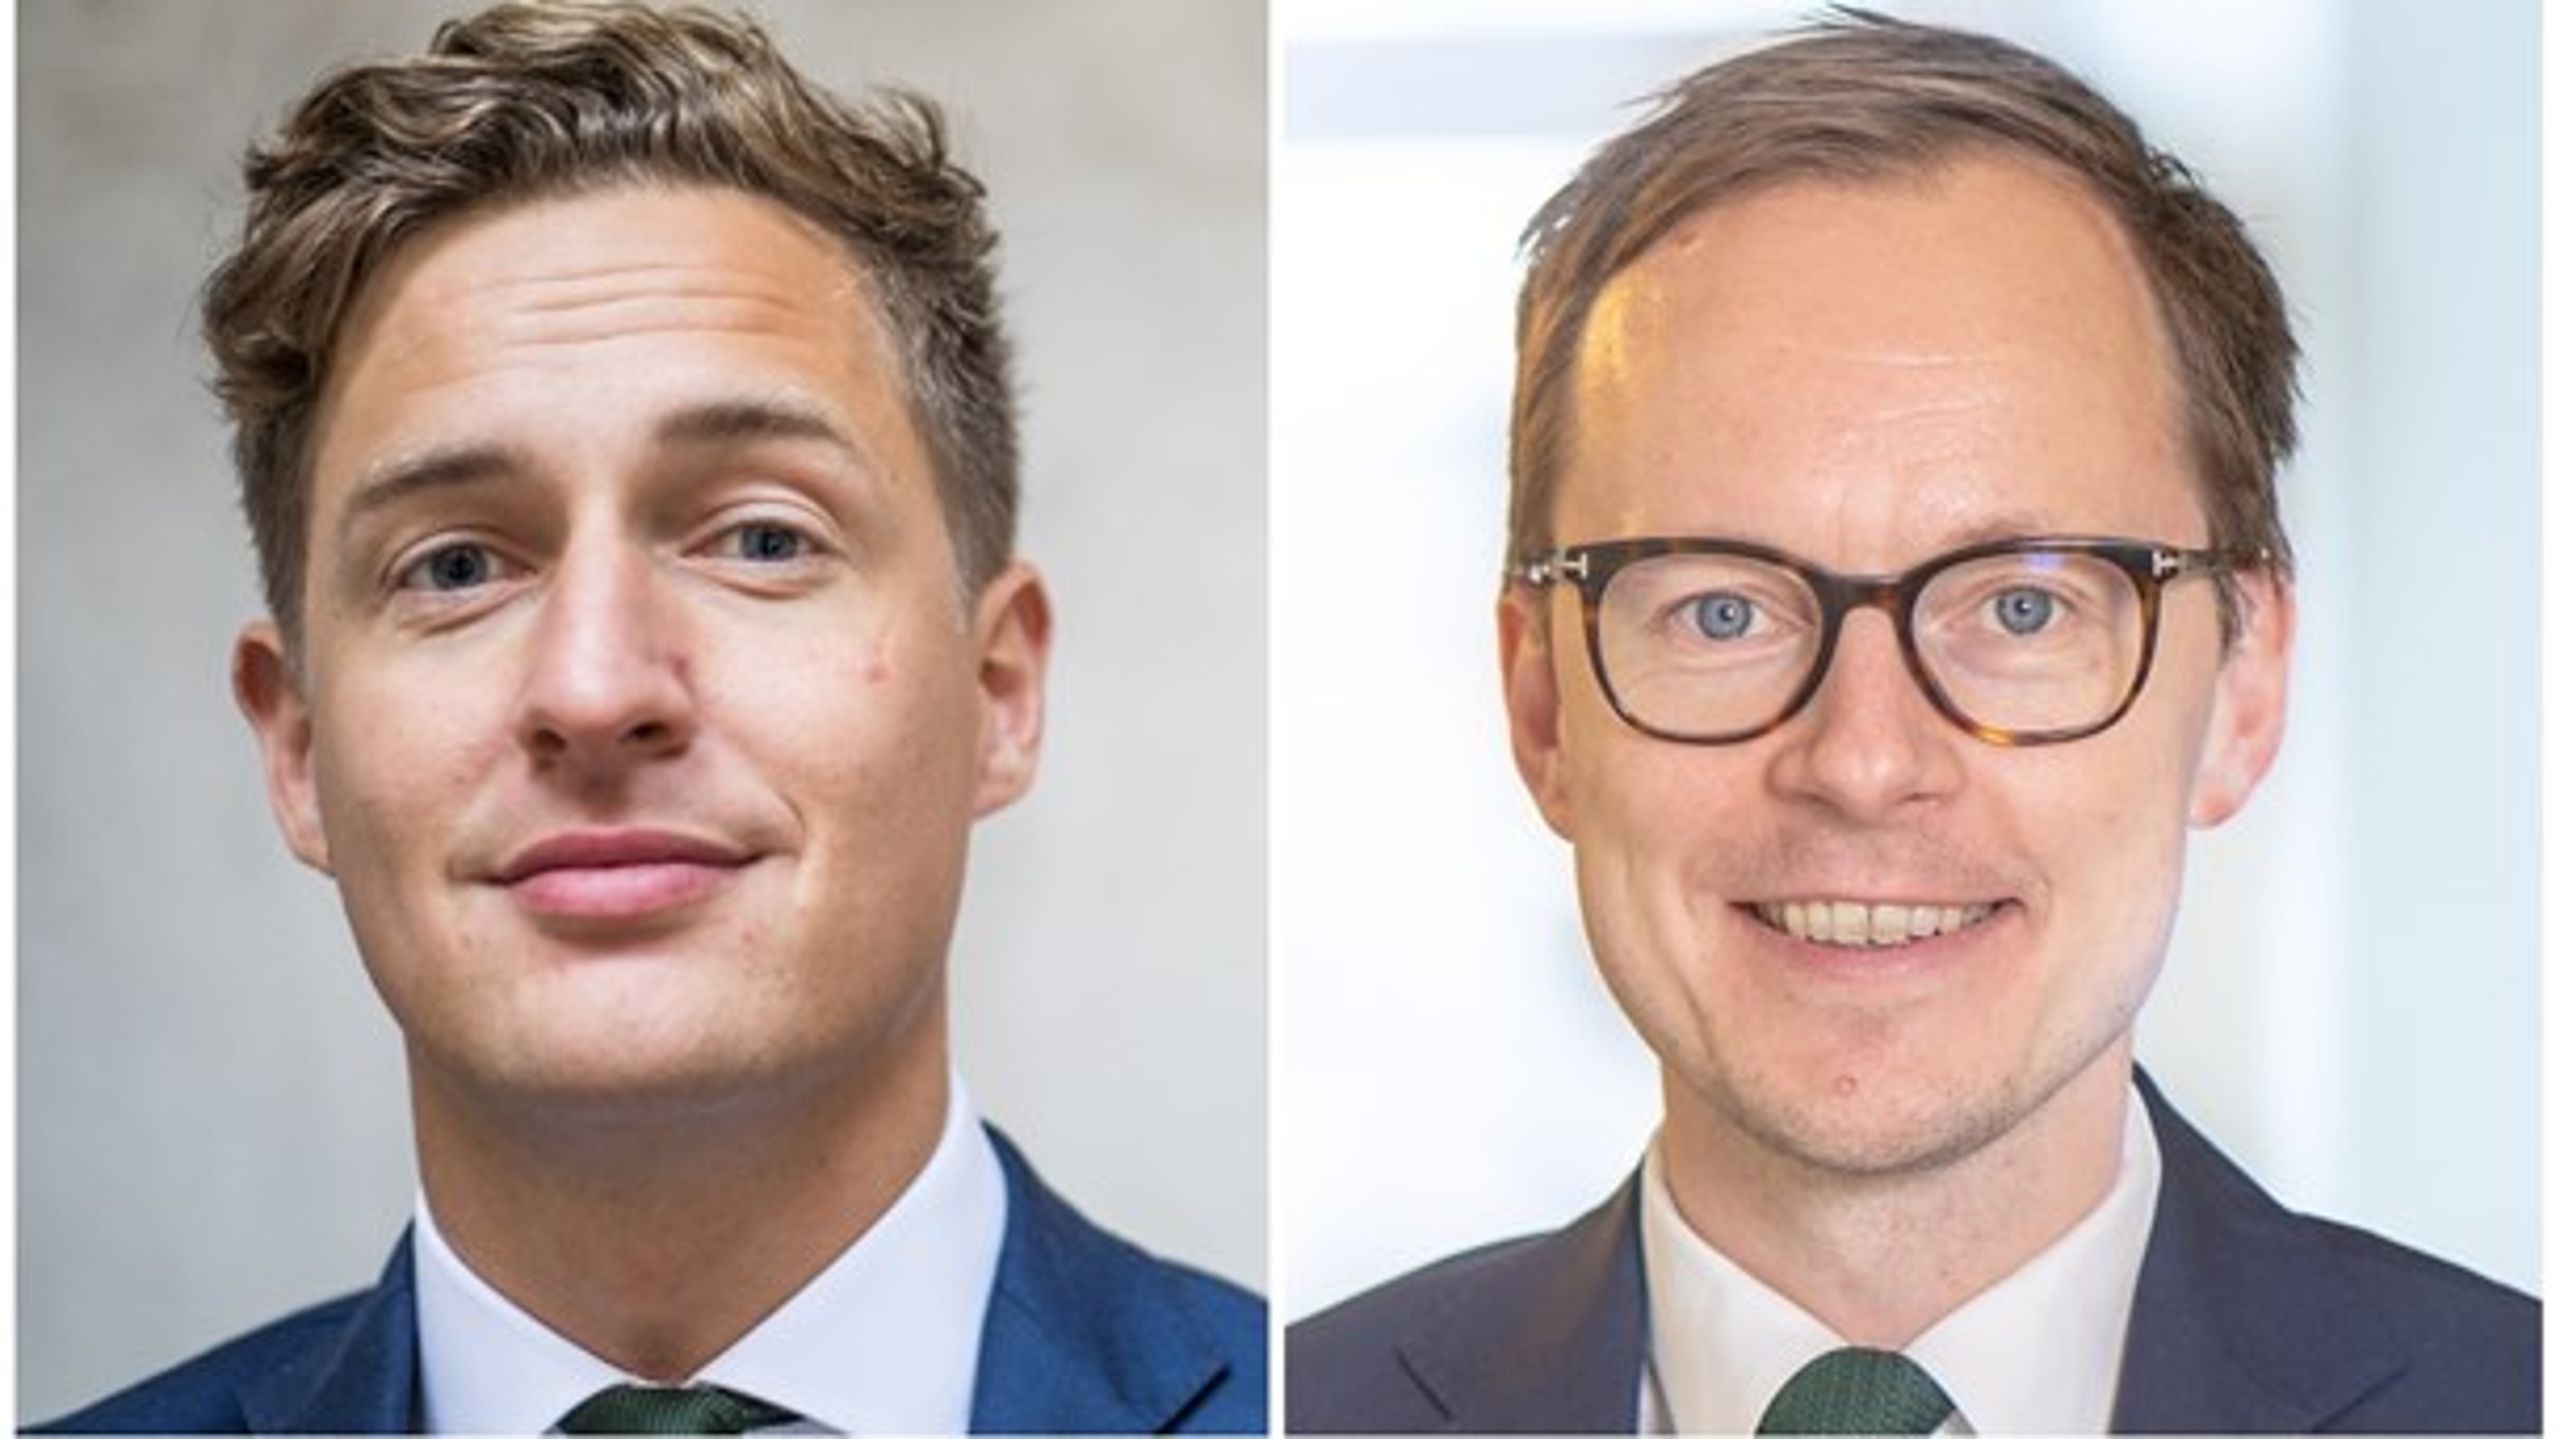 De ekonomisk-politiska talespersonerna Emil Källström (C) och Mats Persson (L) har anledning att vara nöjda efter budgetförhandlingarna.